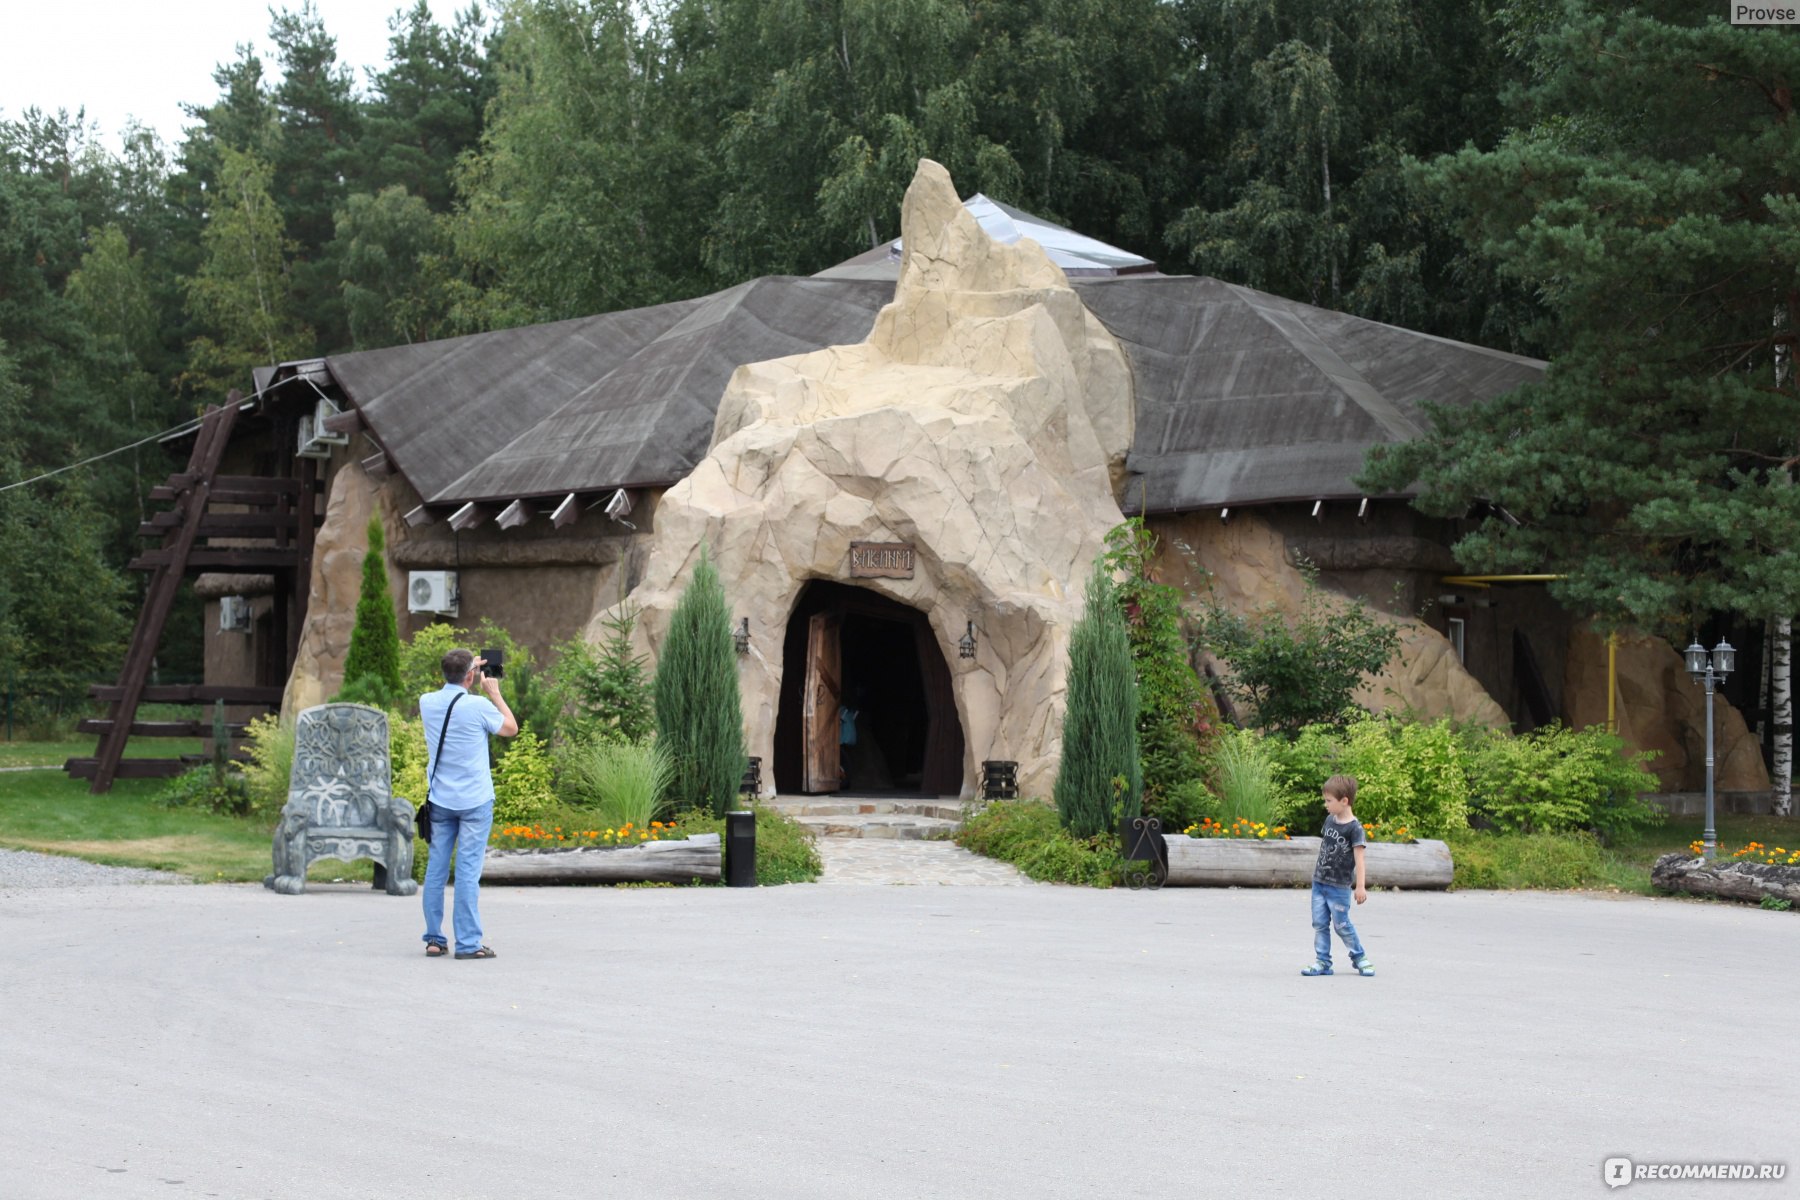 парк отель фестиваль рязанская область официальный